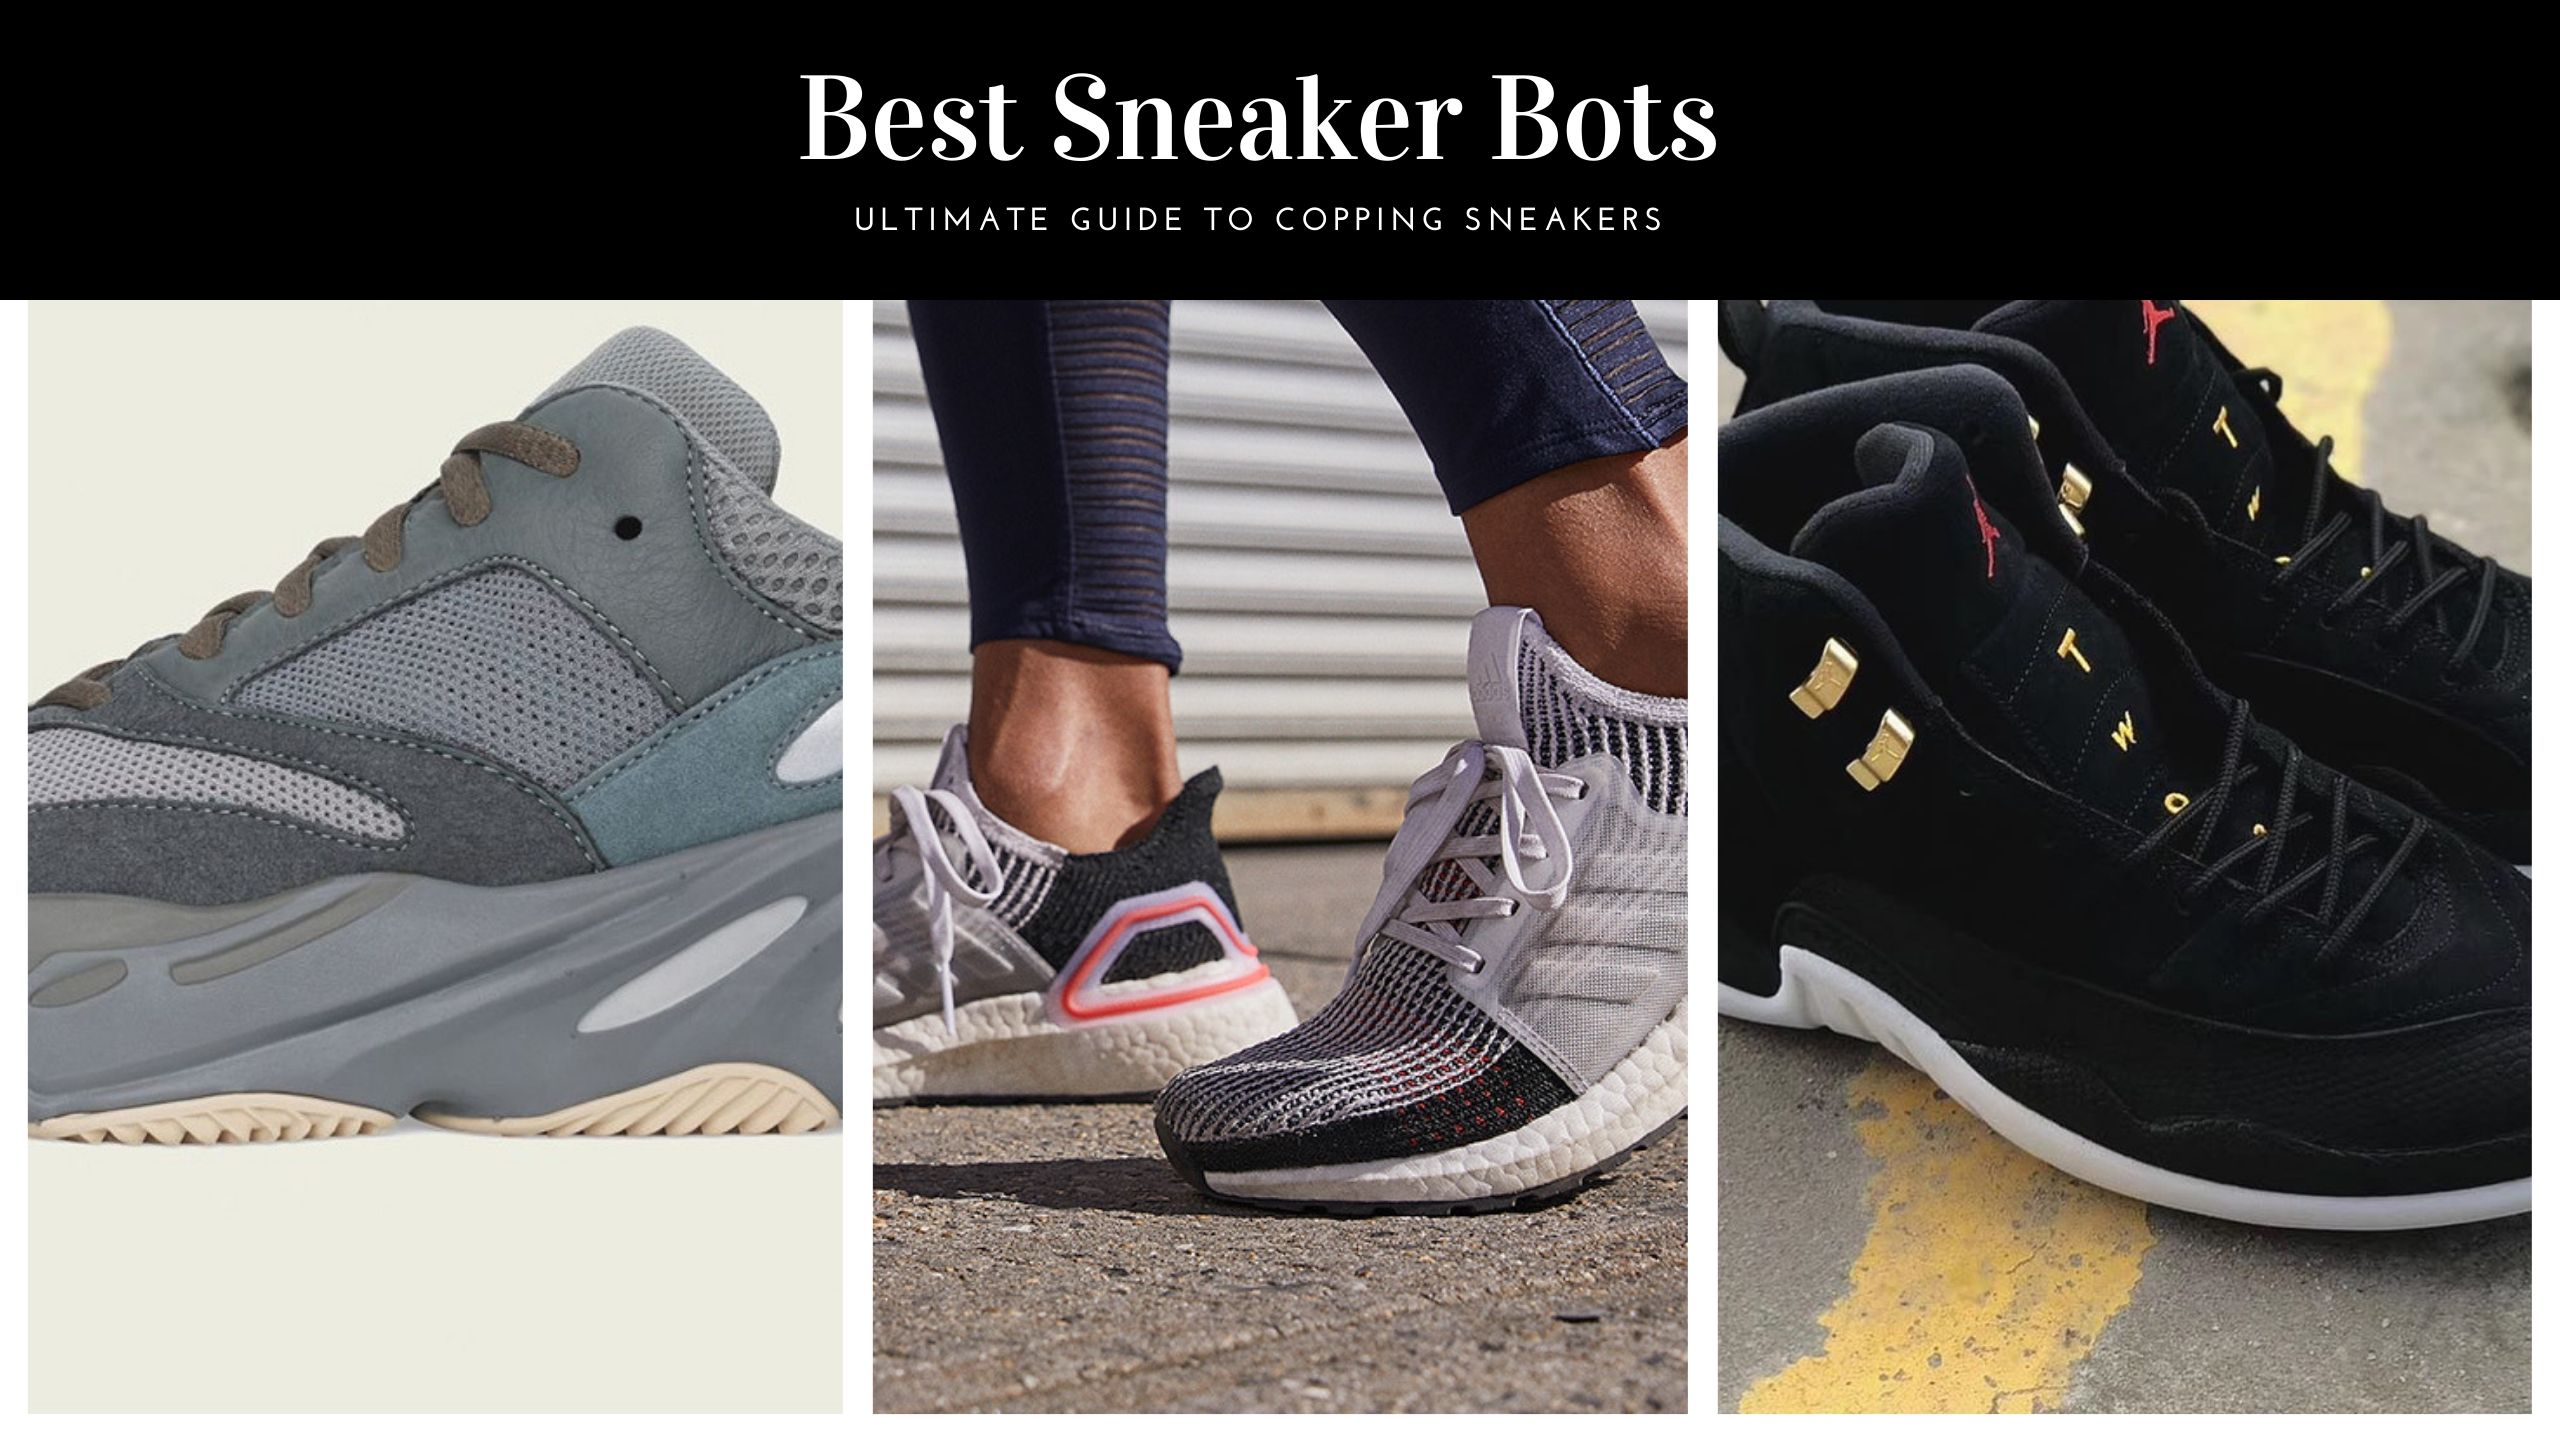 7 Best Sneaker Bots 2020